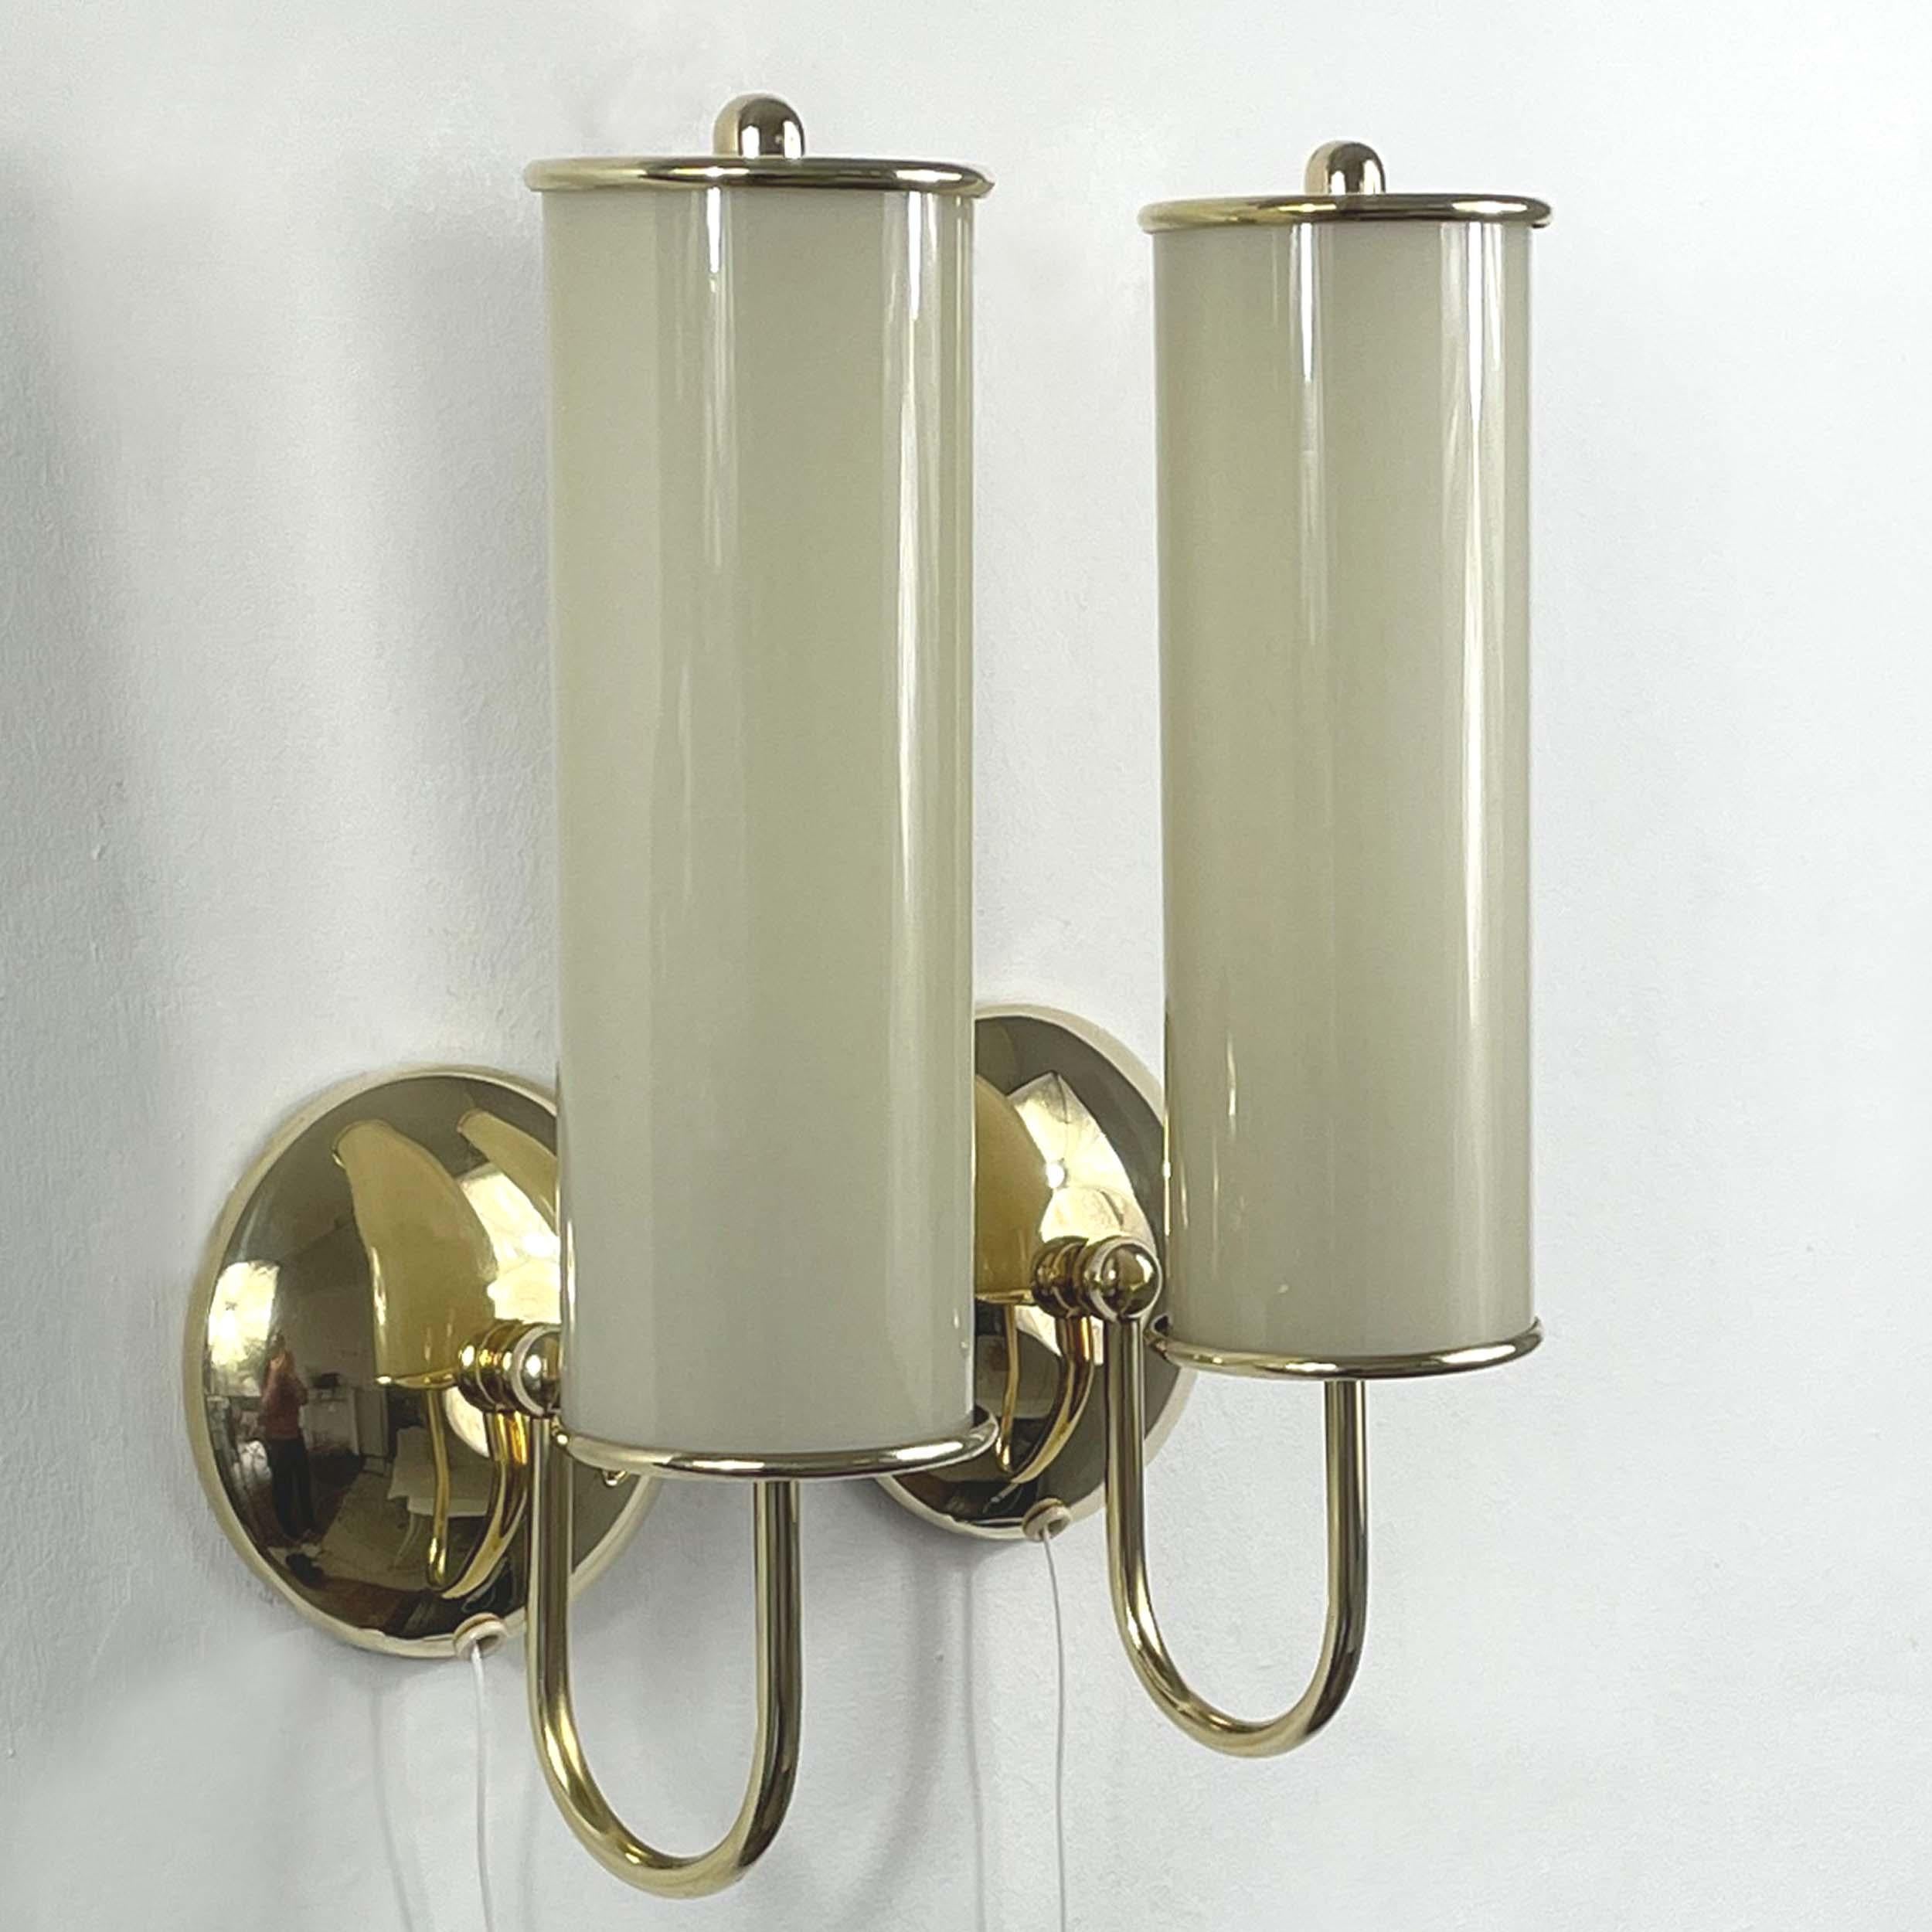 Ces magnifiques appliques ont été conçues et fabriquées en Allemagne pendant la période du Bauhaus, dans les années 1930. Elles sont dotées d'un abat-jour en verre opalin crème en forme de tube et d'une quincaillerie en laiton. 

Les appliques ont